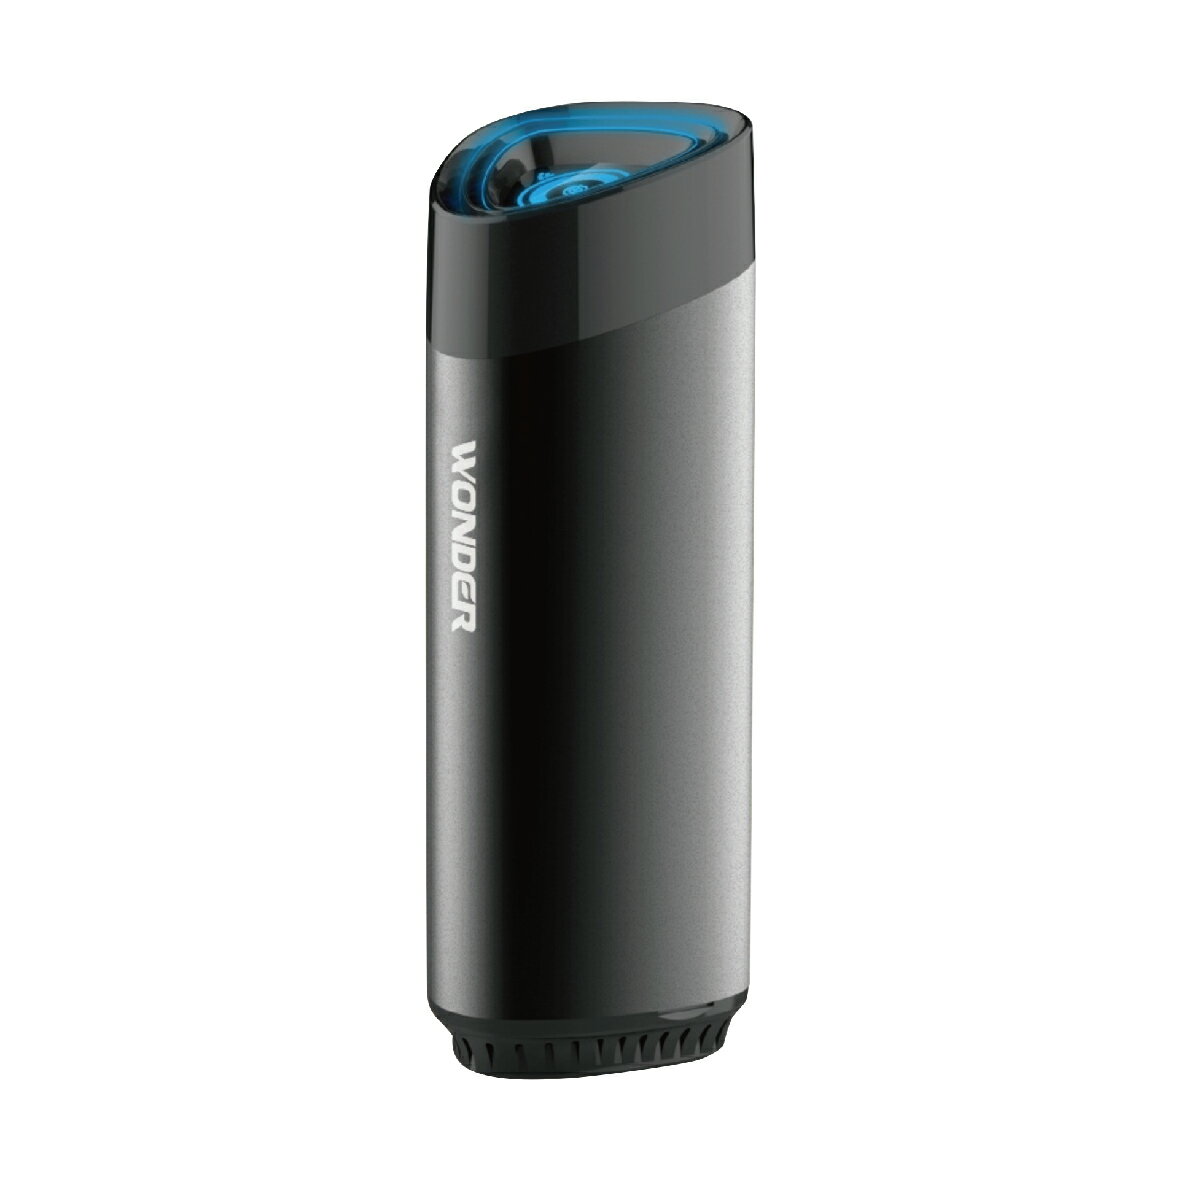 真便宜 WONDER旺德 WH-X05U 智能USB負離子空氣清淨機